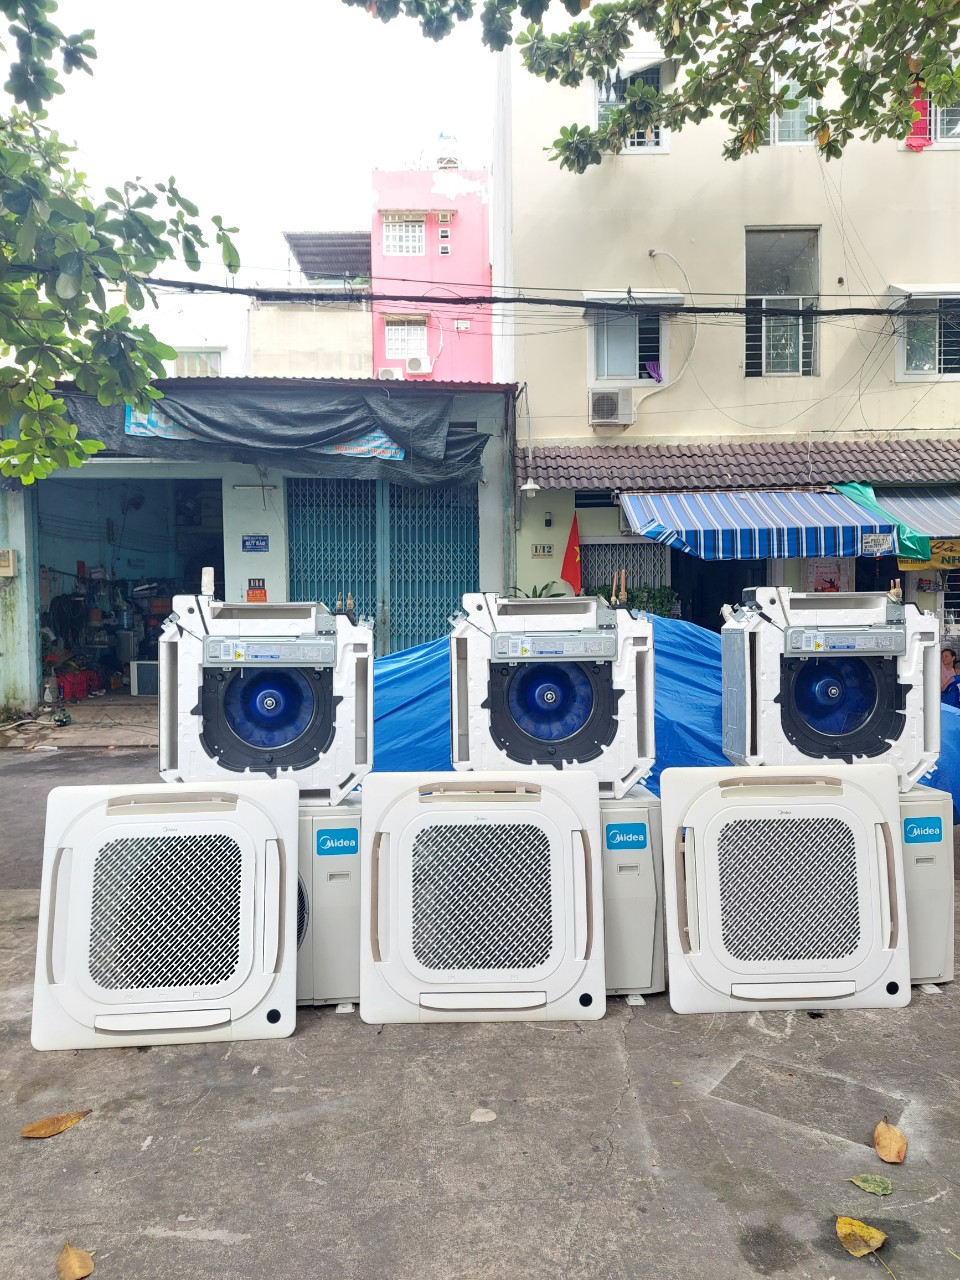 Thanh lý máy lạnh cũ giúp bạn có một khoản tiền để bù vào để mua máy lạnh mới hay làm công chuyện khác | Bán máy lạnh cũ quận Tân Phú uy tín